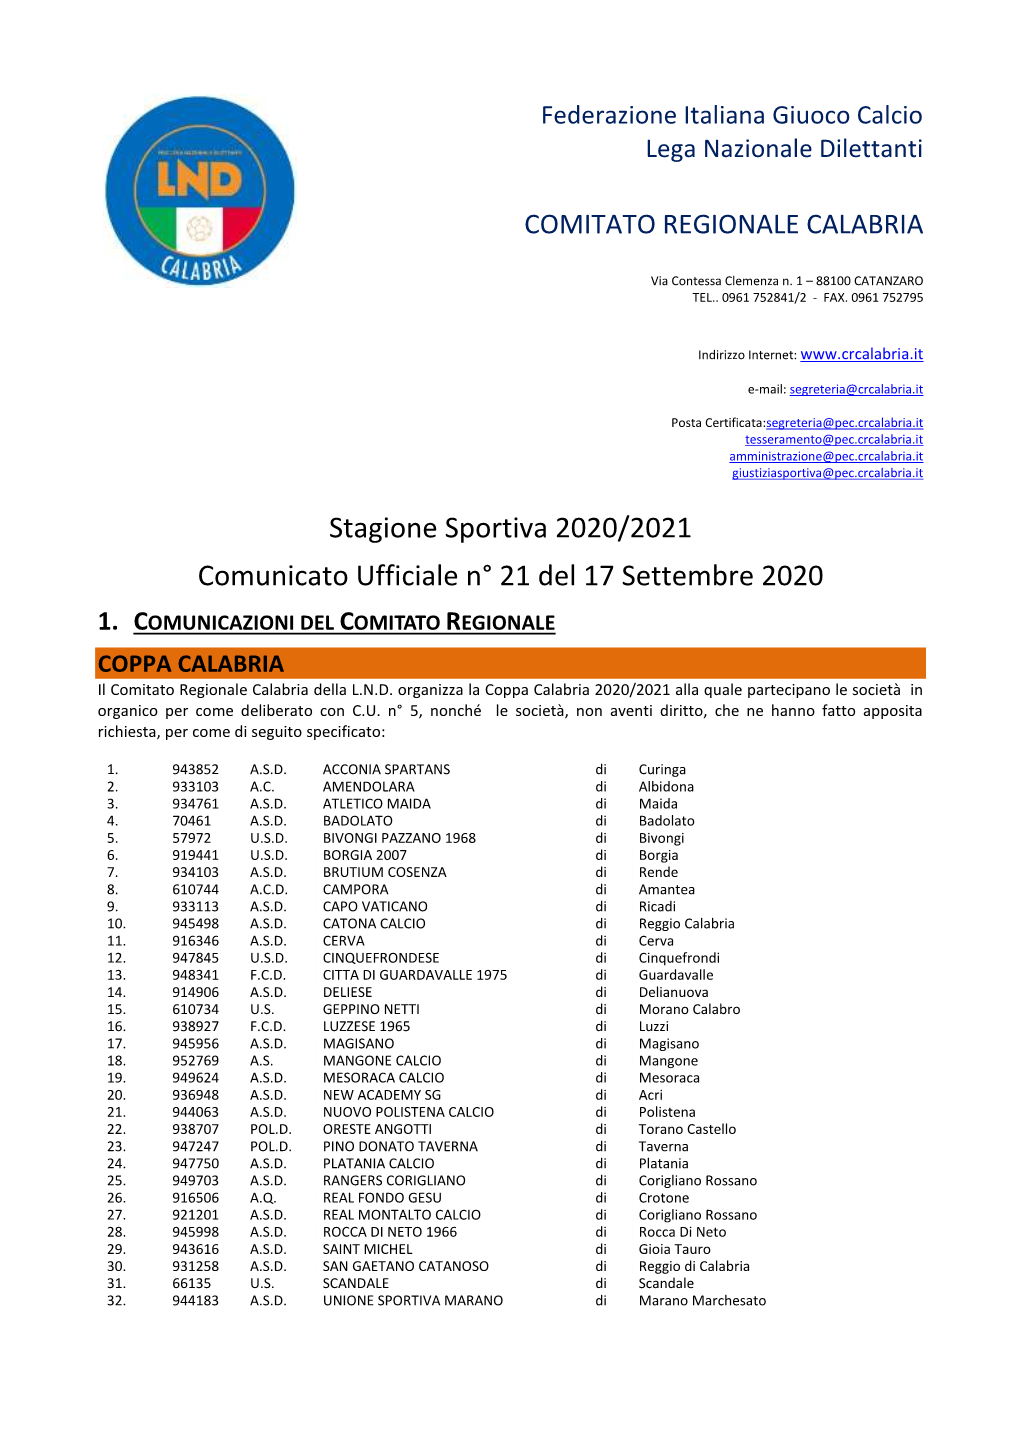 Stagione Sportiva 2020/2021 Comunicato Ufficiale N° 21 Del 17 Settembre 2020 1